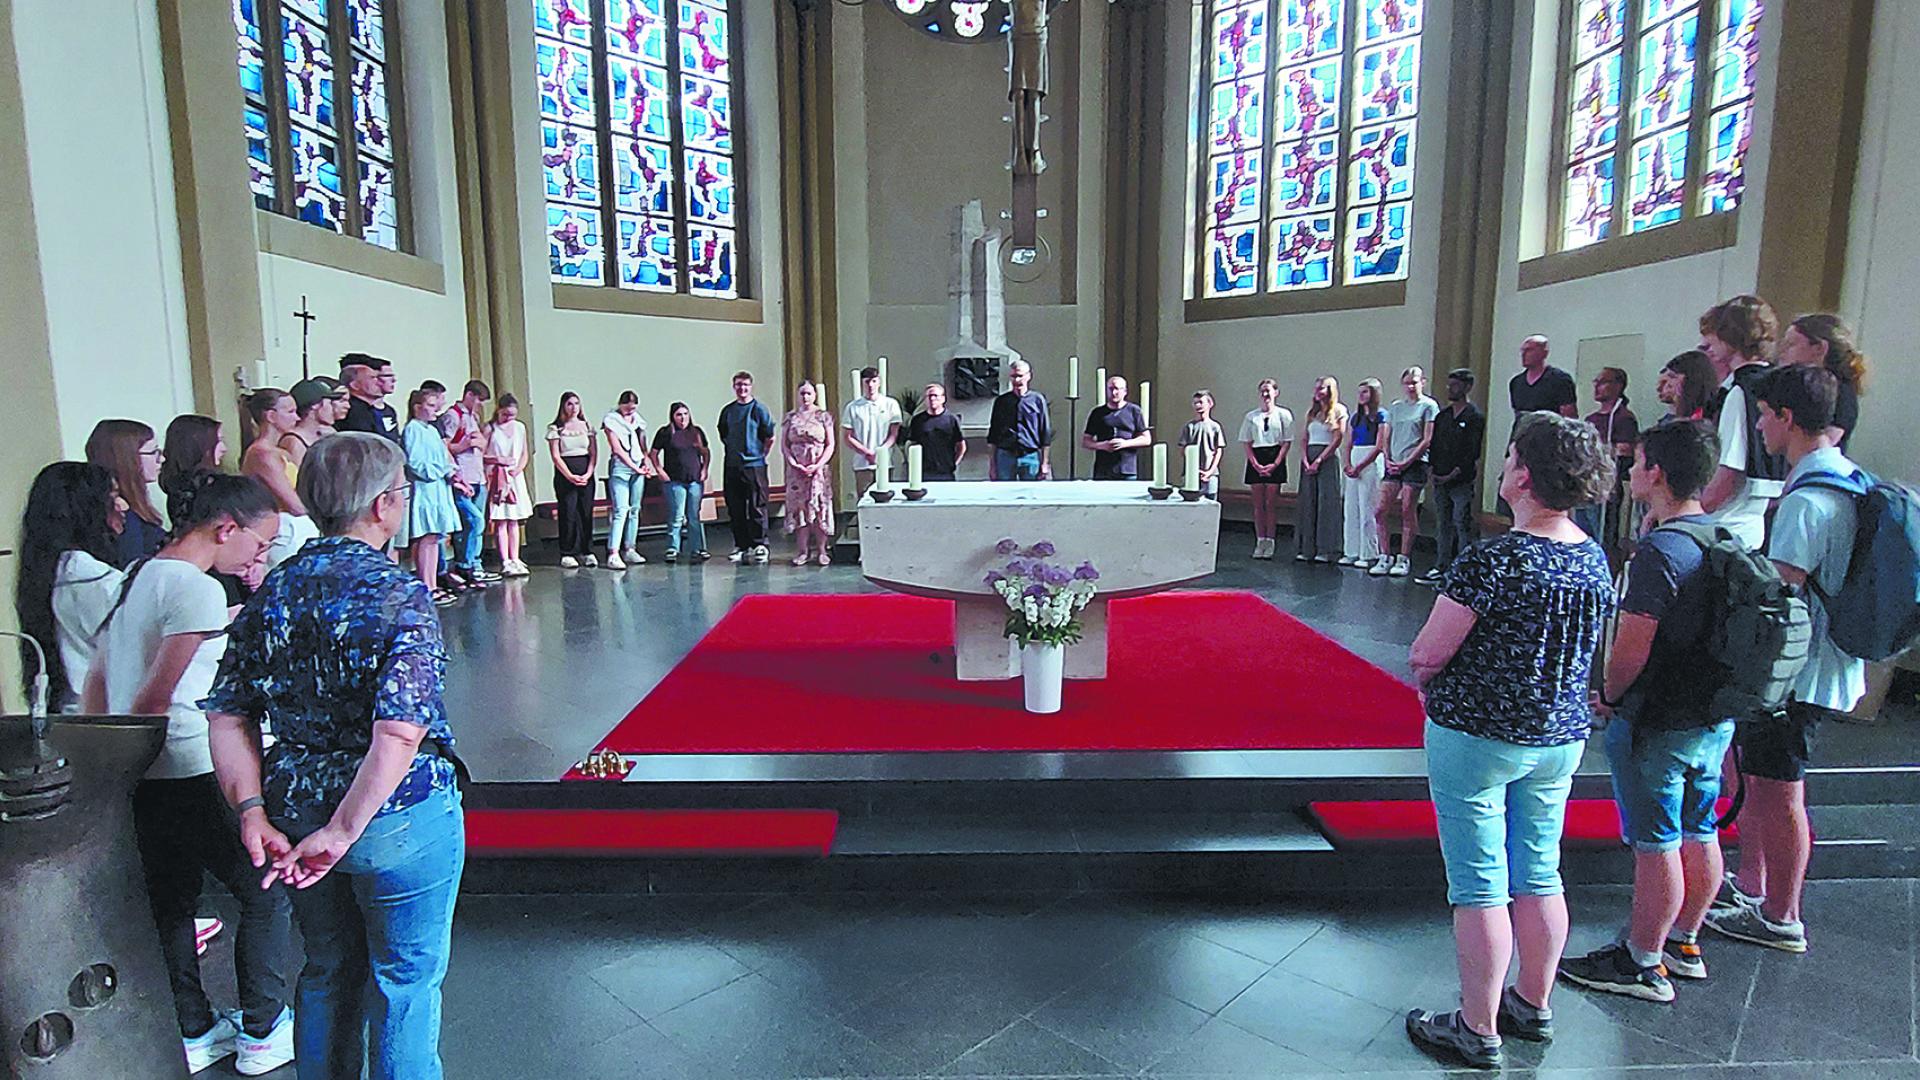 Abschlussrunde in der Herz-Jesu-Kirche in Geestemünde.